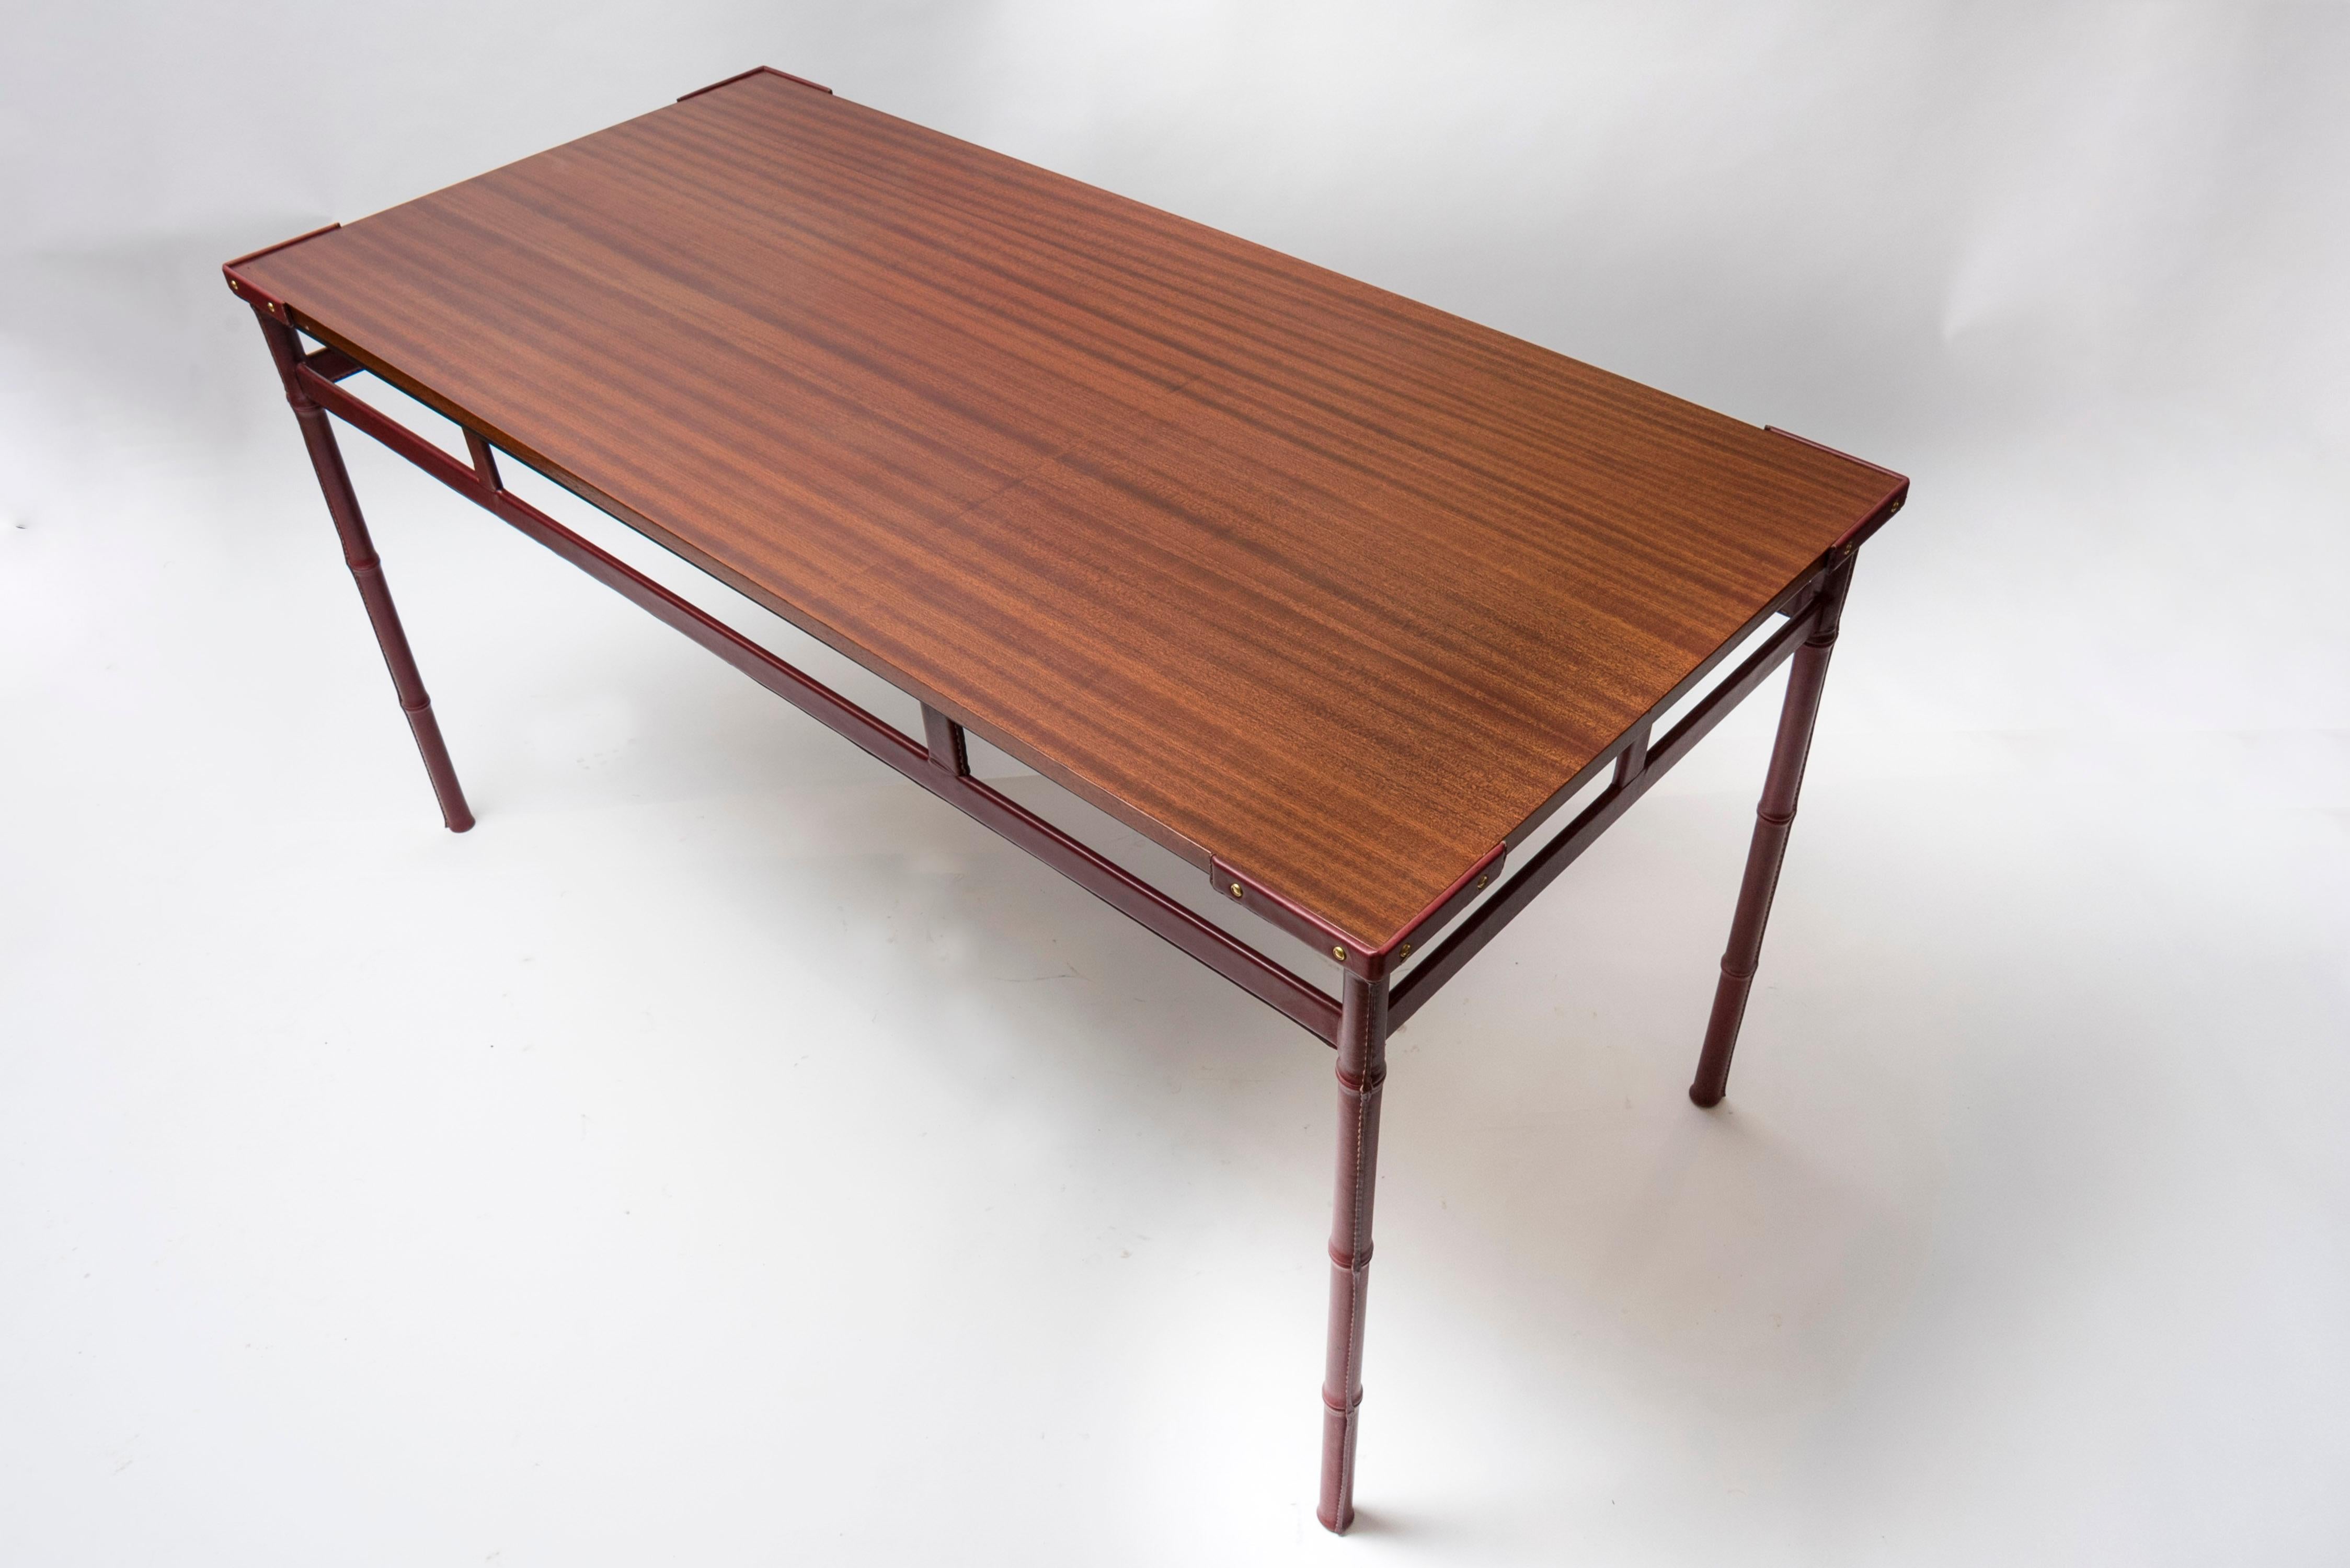 Petite table à manger ou écritoire en cuir surpiqué des années 50 par Jacques Adnet
Cuir de vache et bois de poirier contaminé

